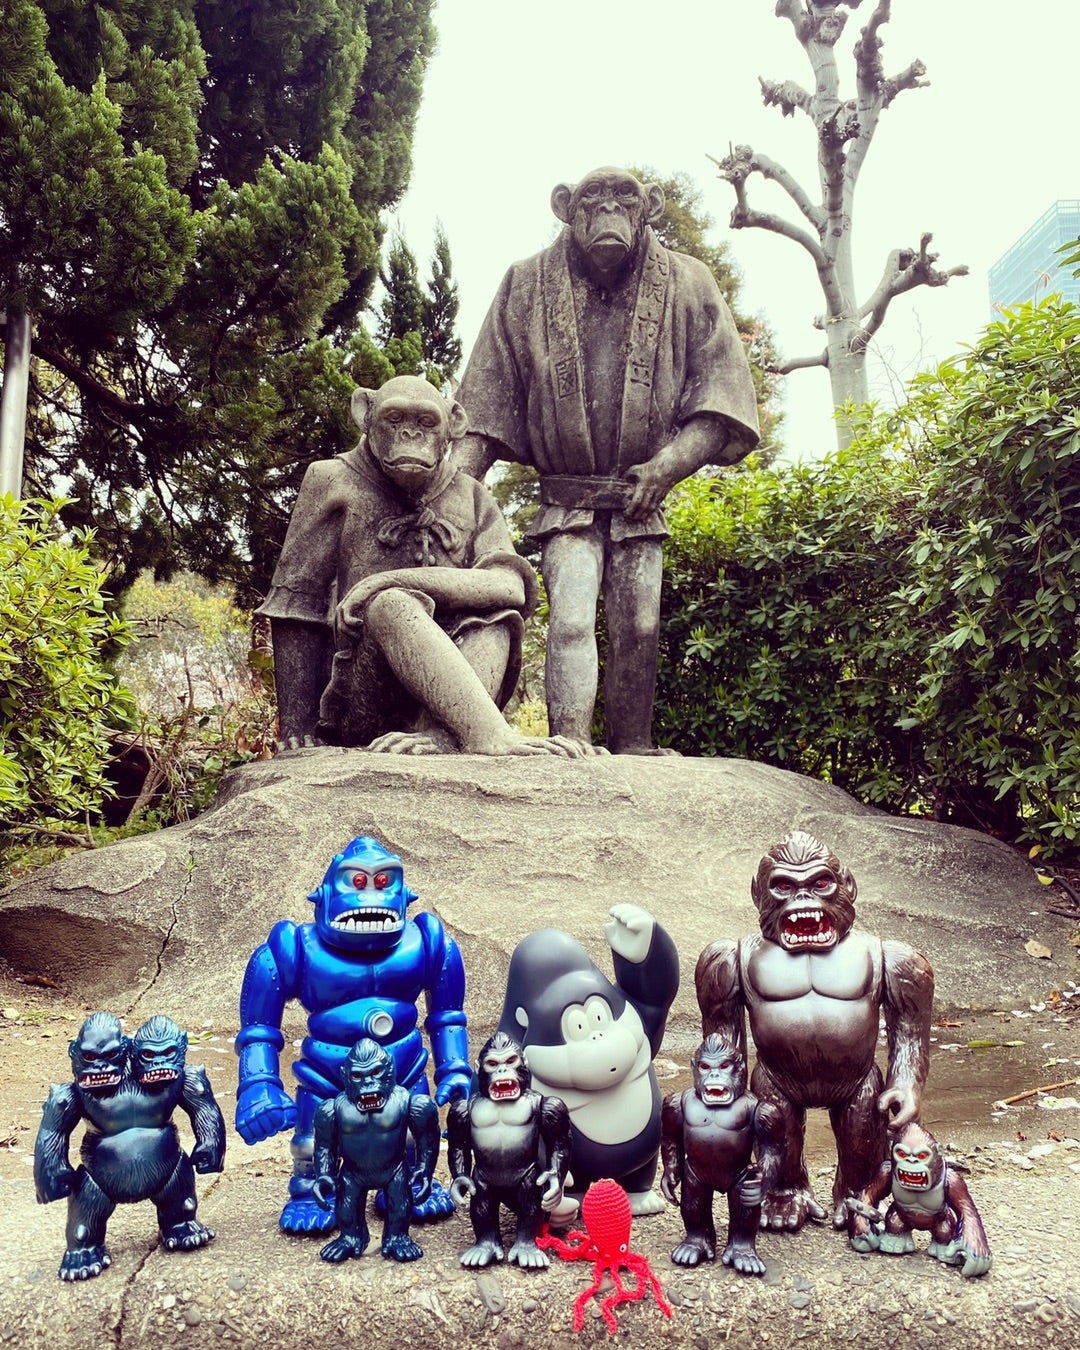 天王寺動物園で動物達を見守る猿の神様 リタとロイド | 怪獣玩具と 